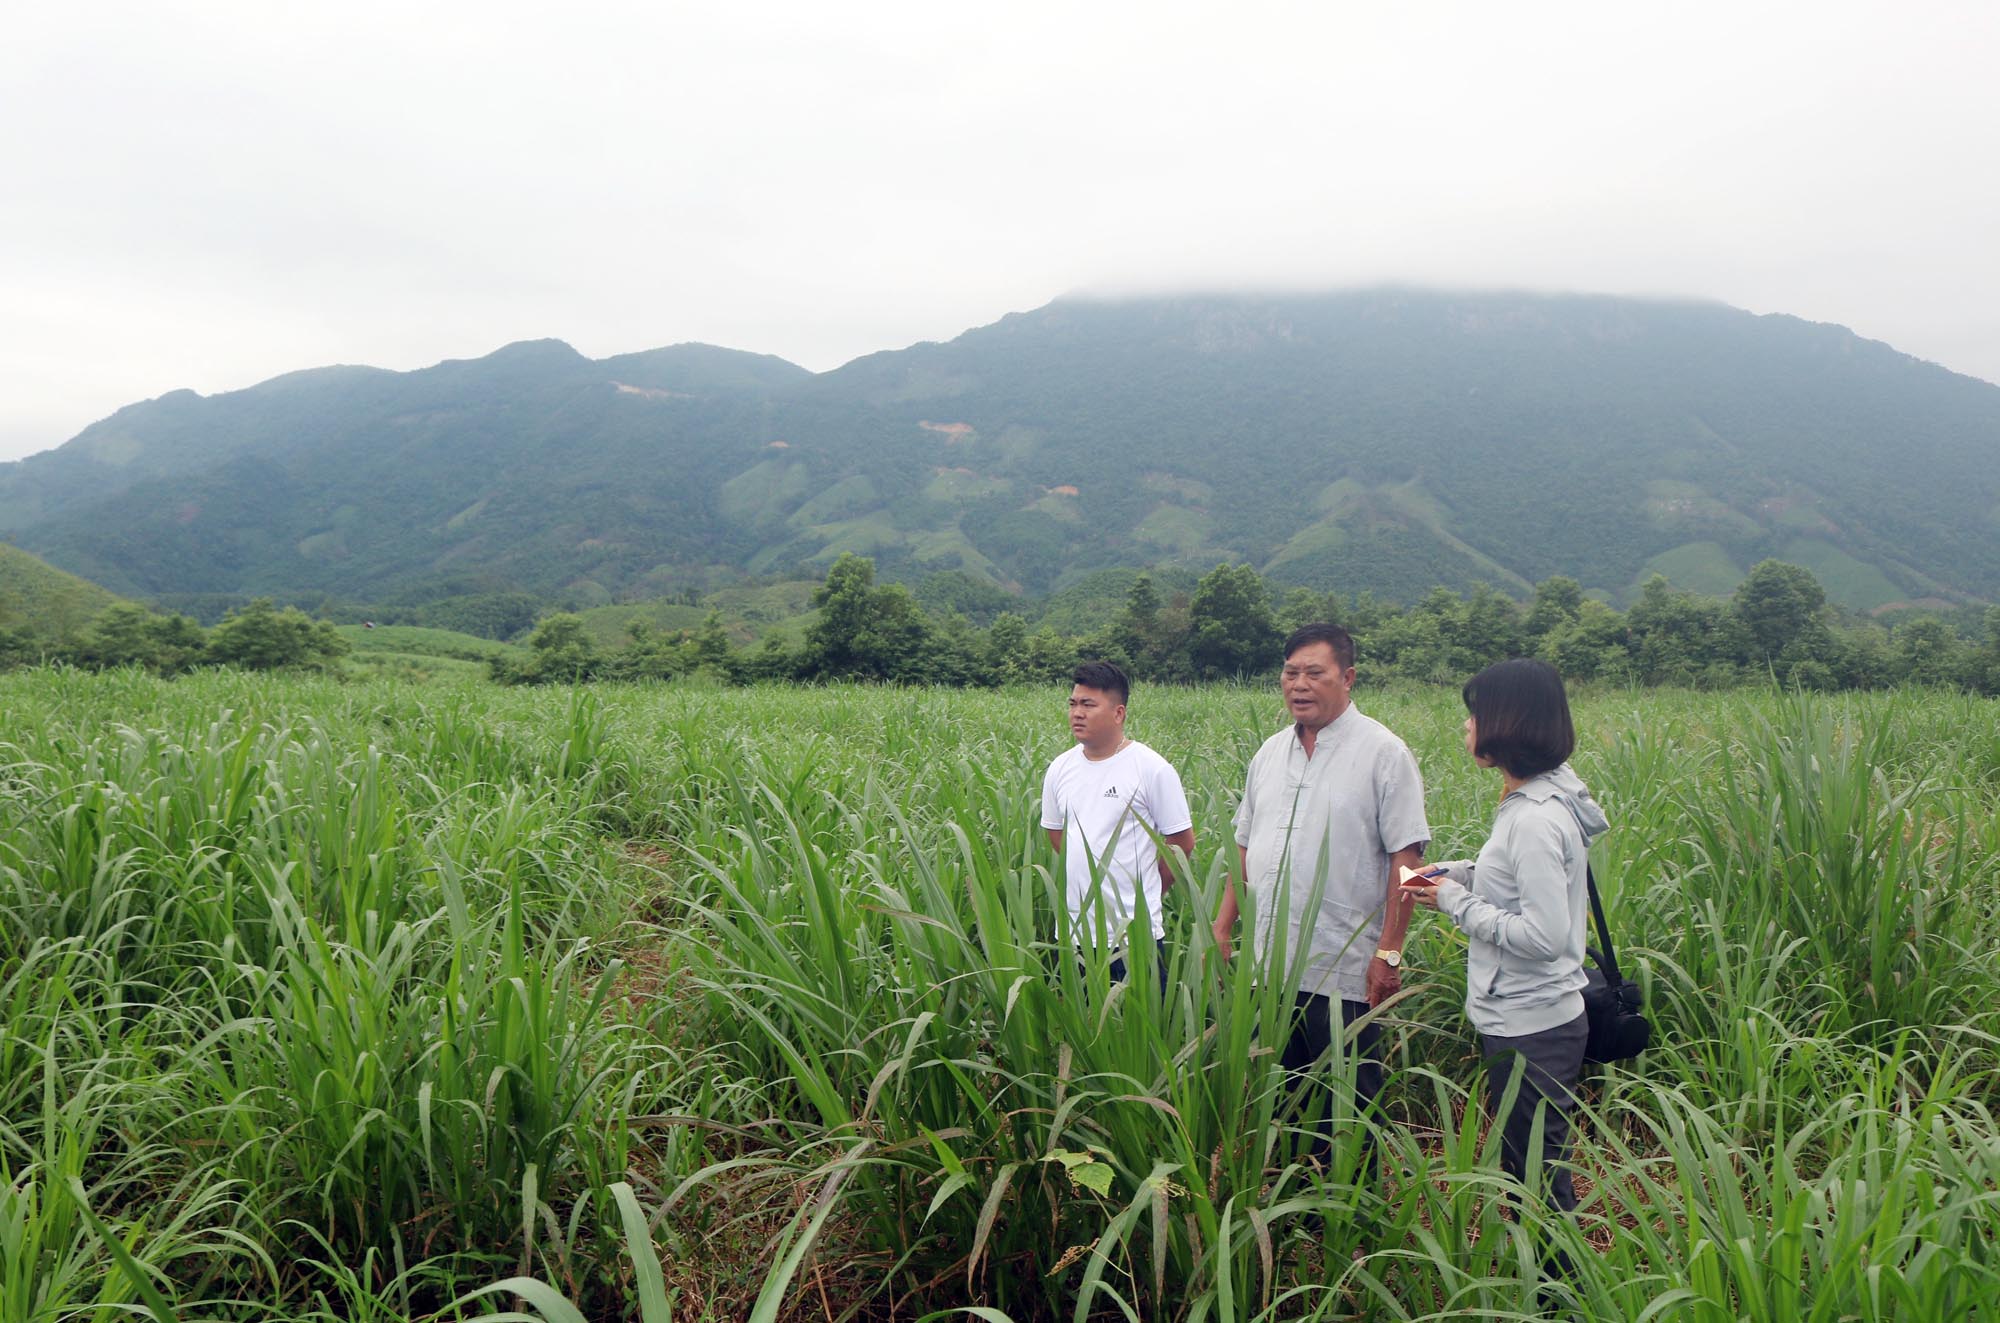 Ông Phùn Hợp Sềnh (ở giữa) giới thiệu về khu vực trồng cỏ và ngô sinh khối do ông vận động bà con nhân dân trồng để nâng thu nhập.